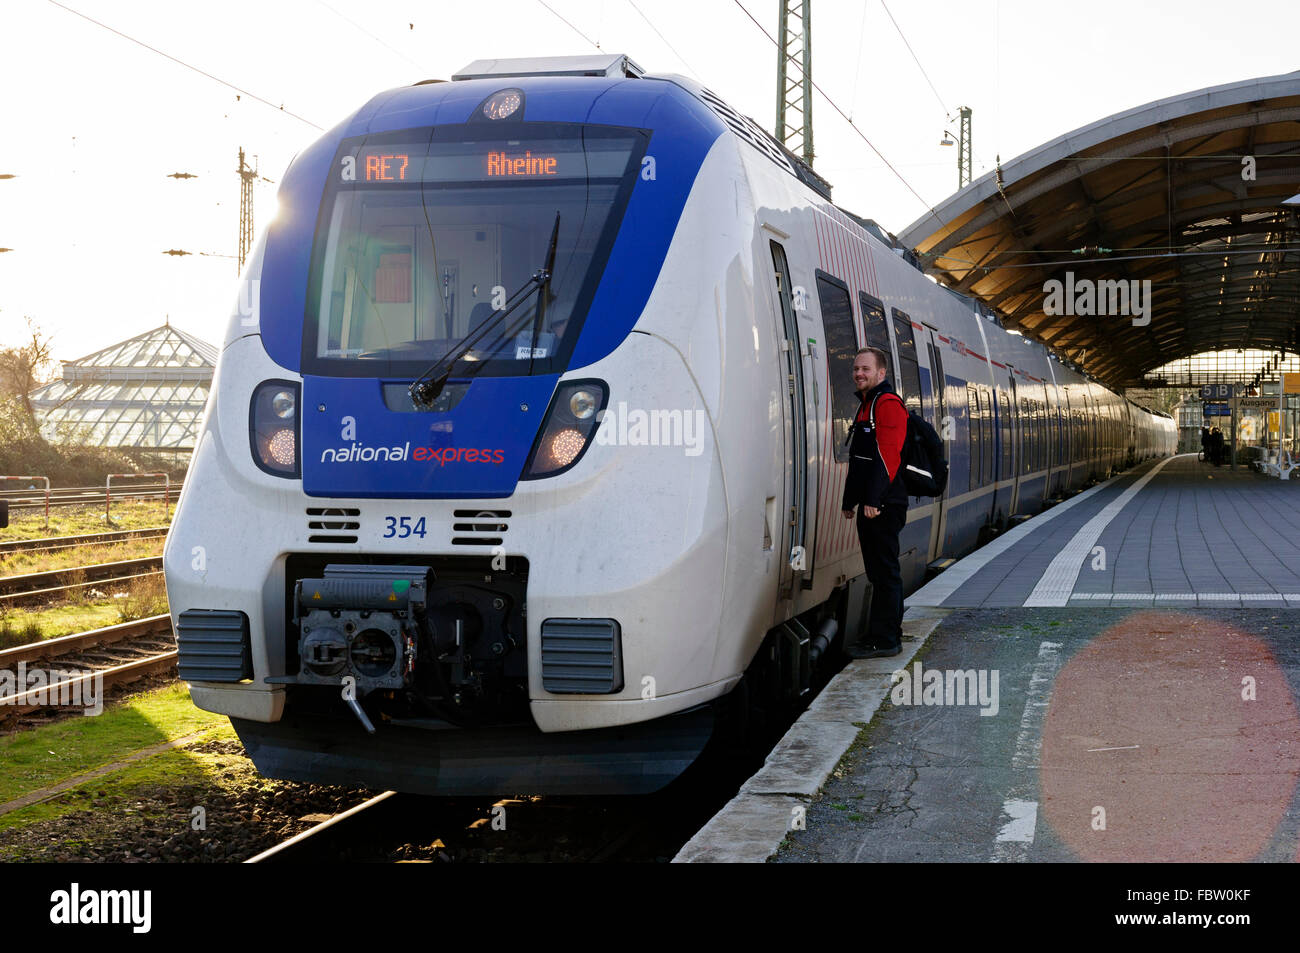 National Express tren de la UEM de talento en Krefeld En RE7 servicio a Reine, Alemania. Foto de stock